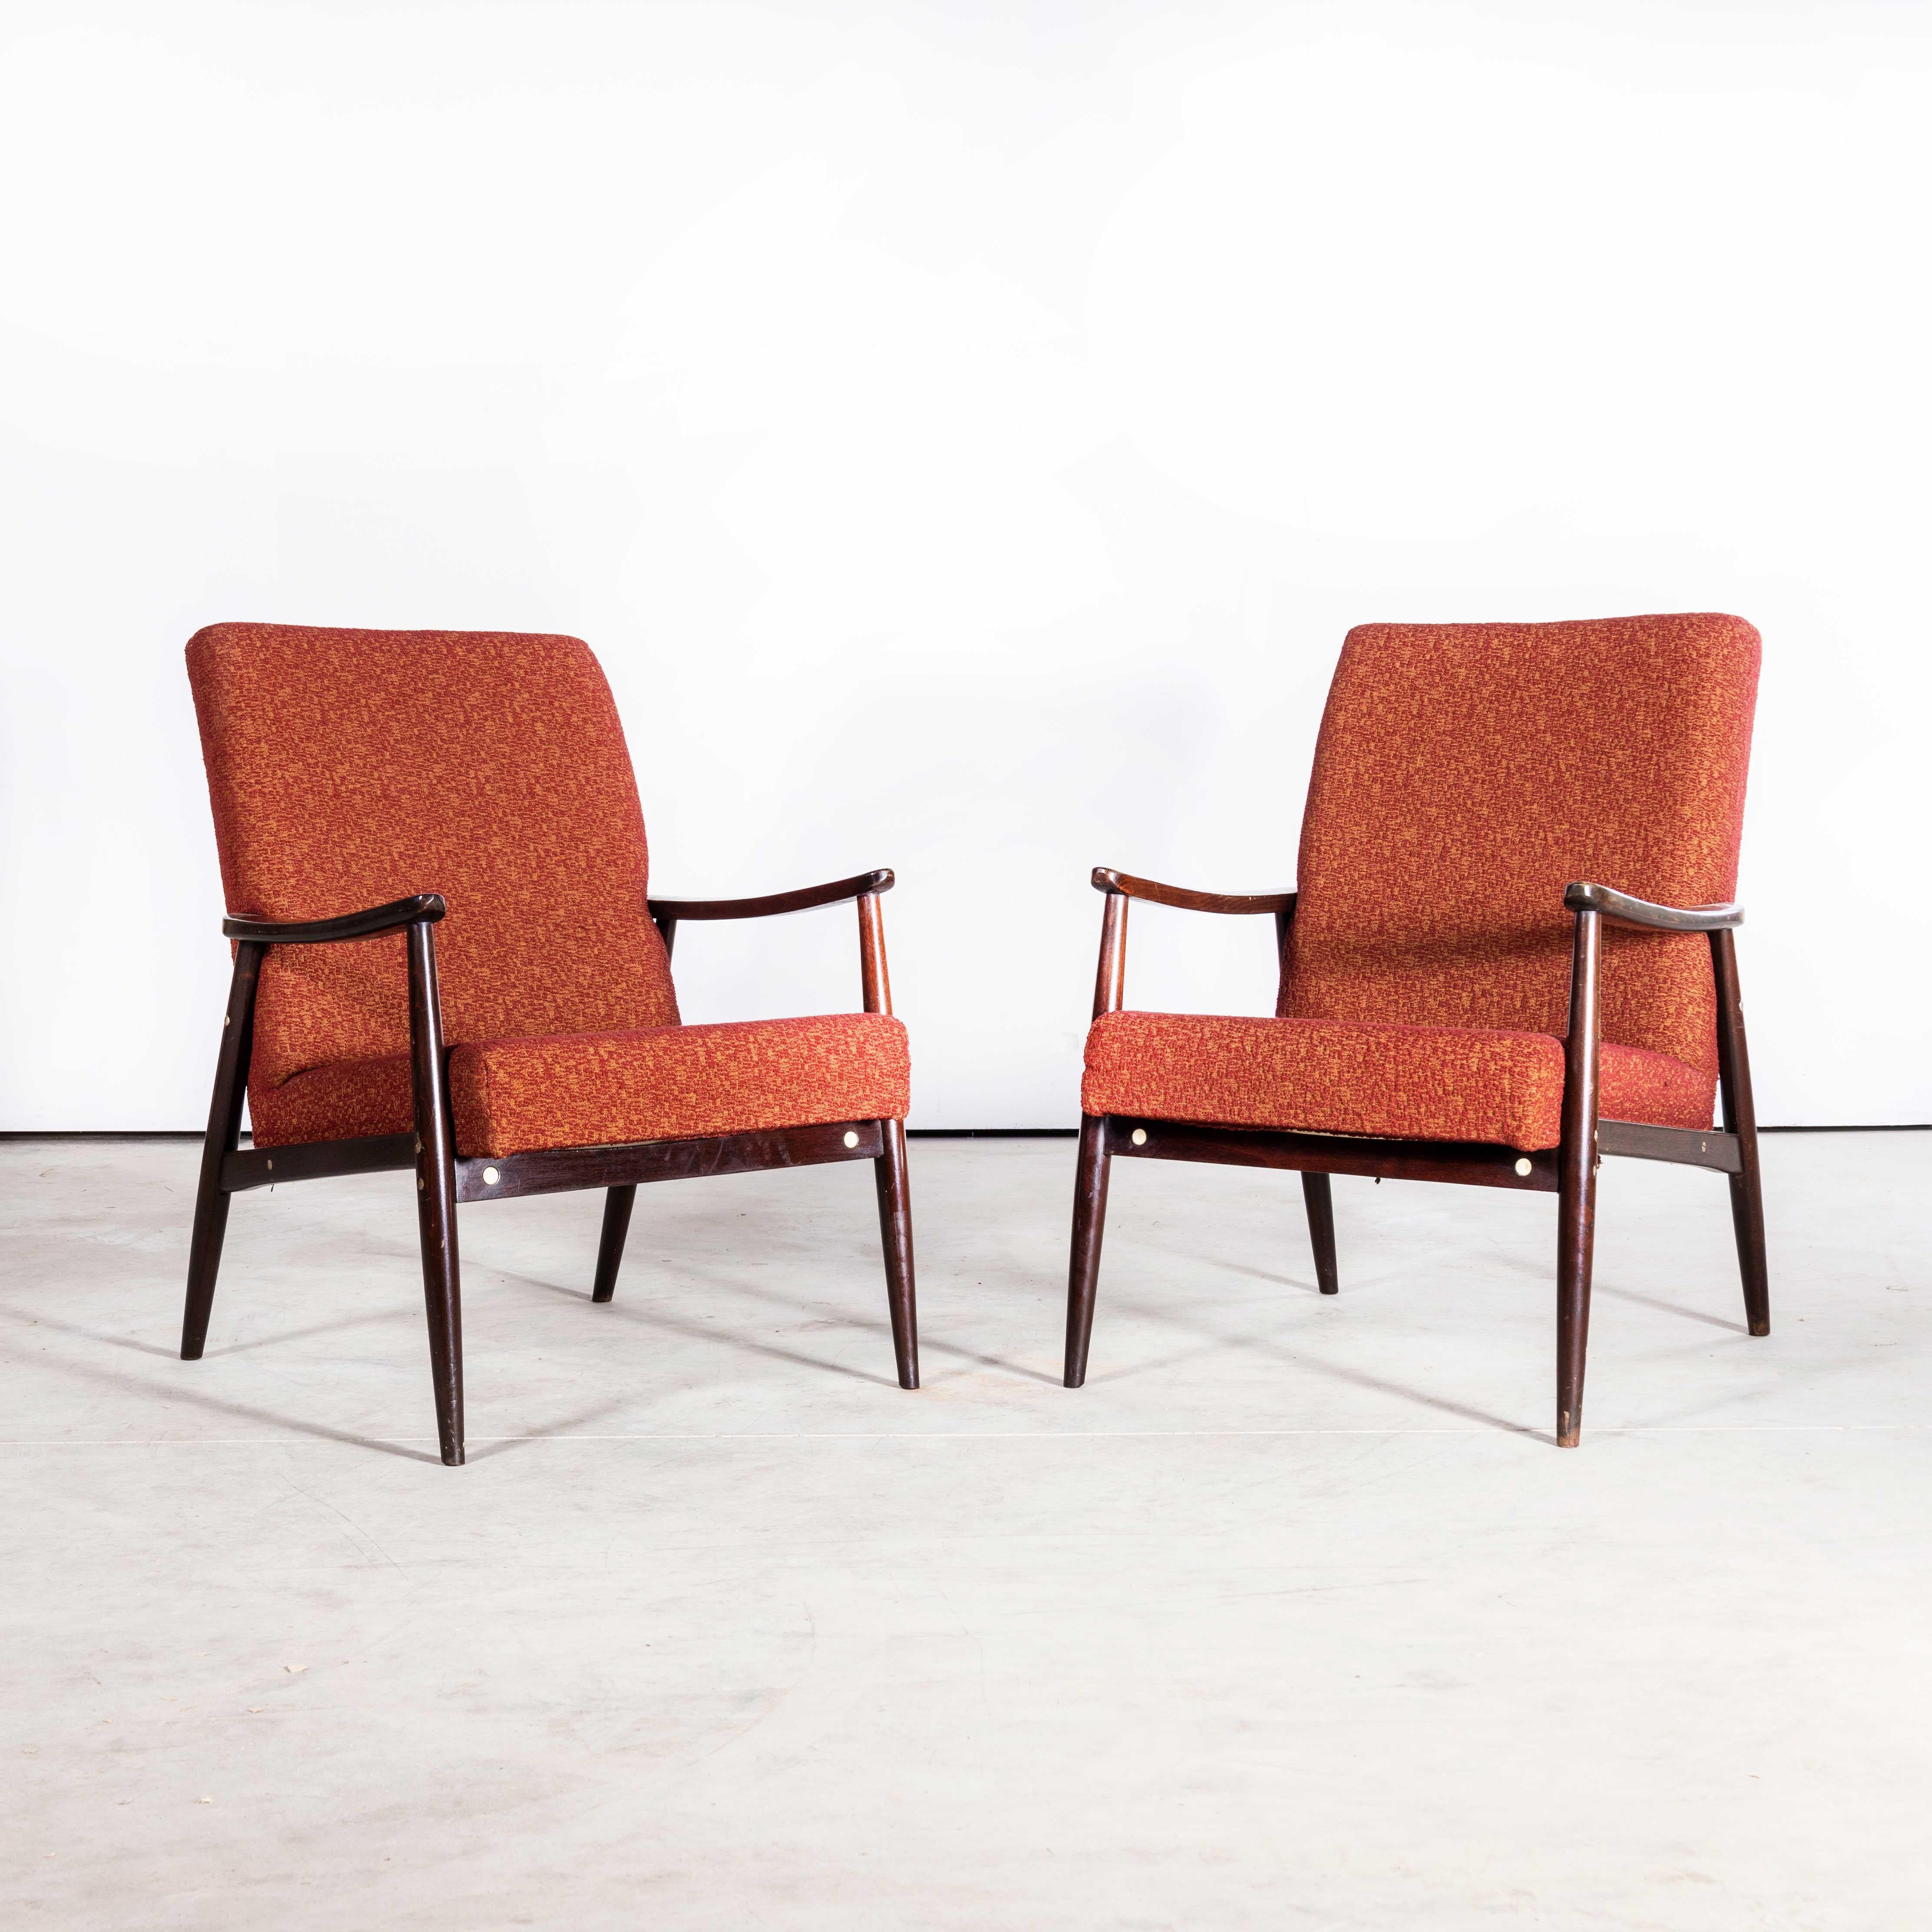 
1950er Jahre Jaroslav Smidek Original Sessel - Paar in Tiefrot
1950's Jaroslav Smidek Original Sessel - Paar in Deep Red. Direkt aus der Tschechischen Republik stammend, ist dies eines der elegantesten Designs von Smidek. Wir wählen sorgfältig sehr